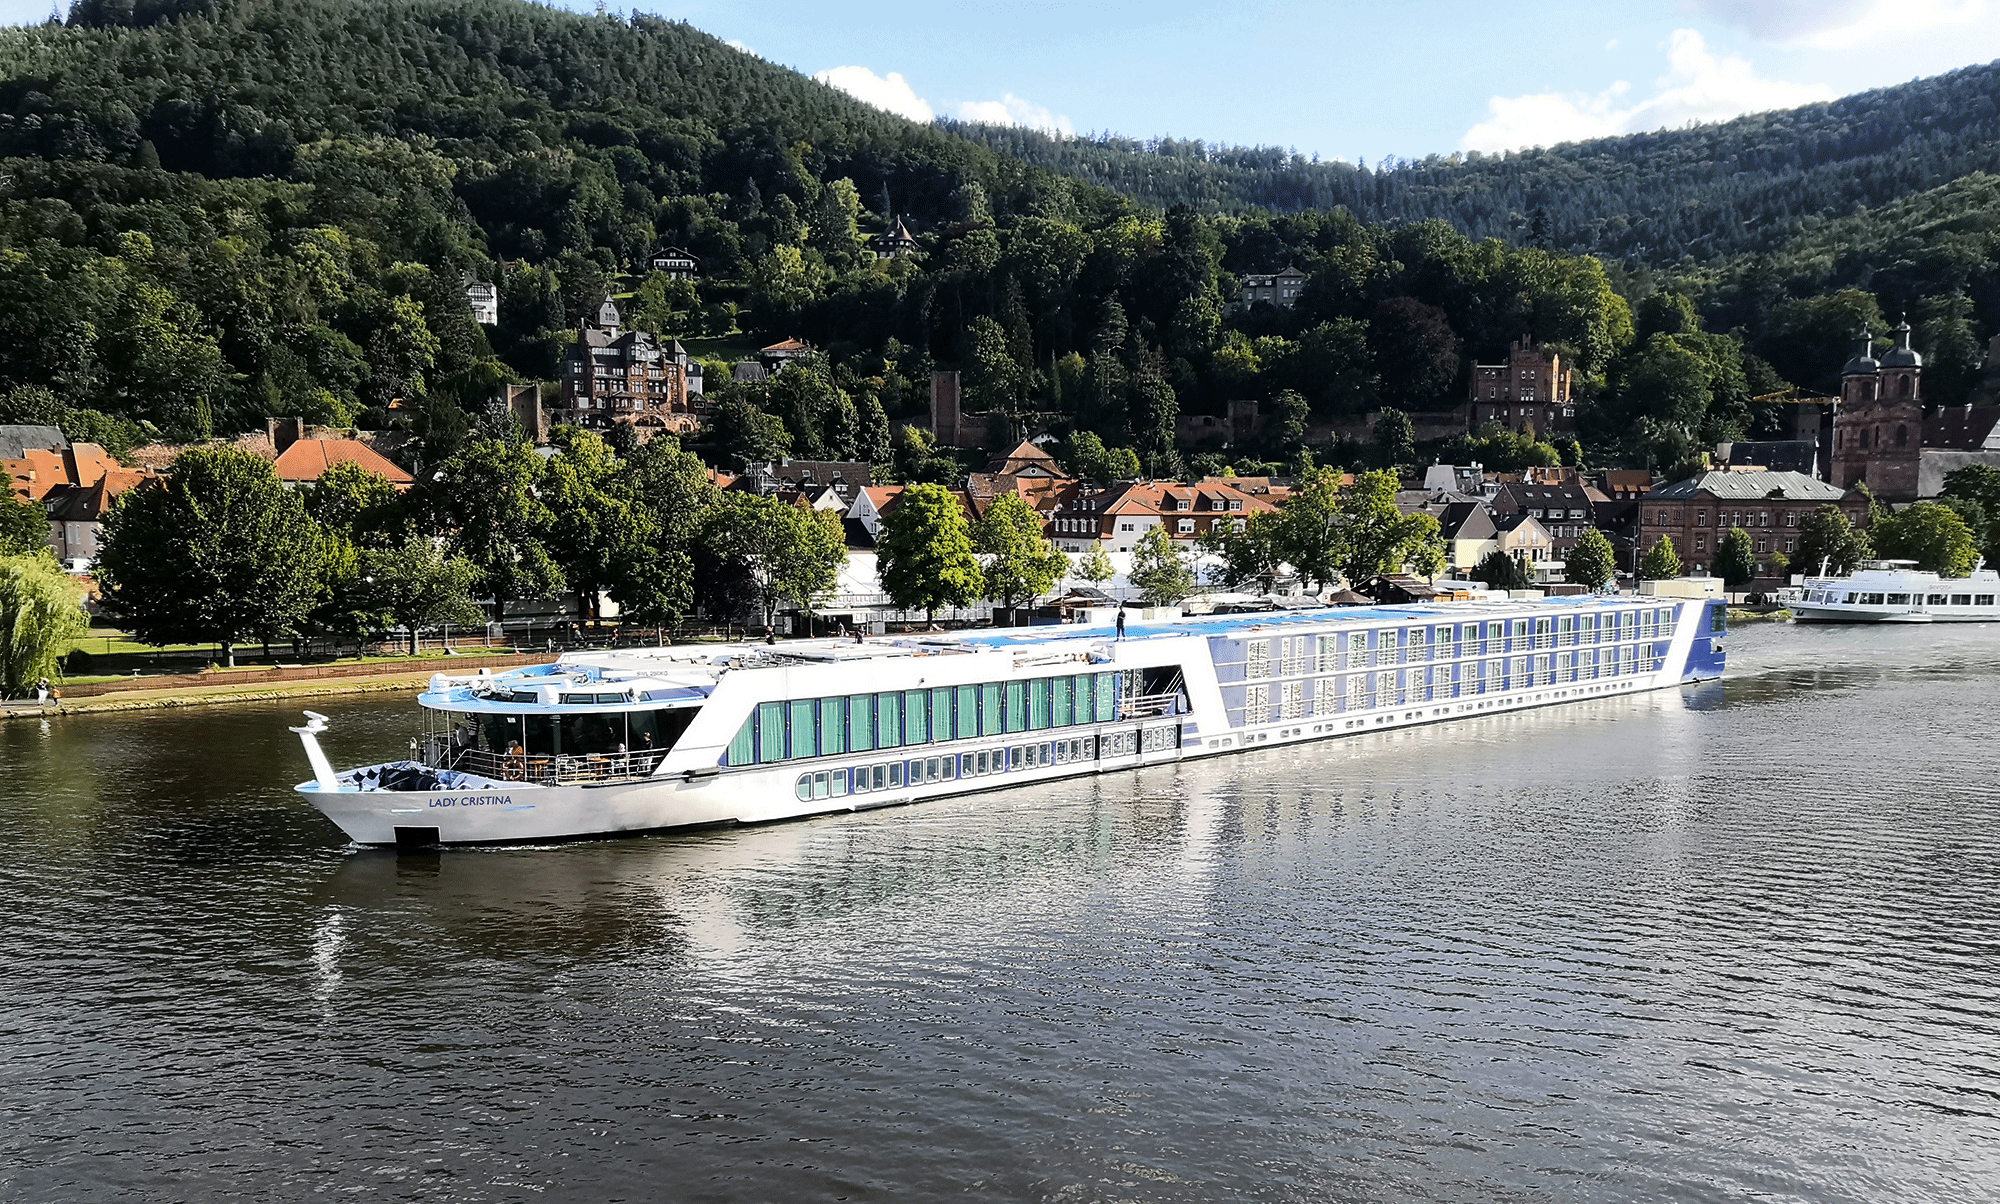 M/S Lady Cristina 7 Tage Alles im Fluss – auf der Donau und an Bord